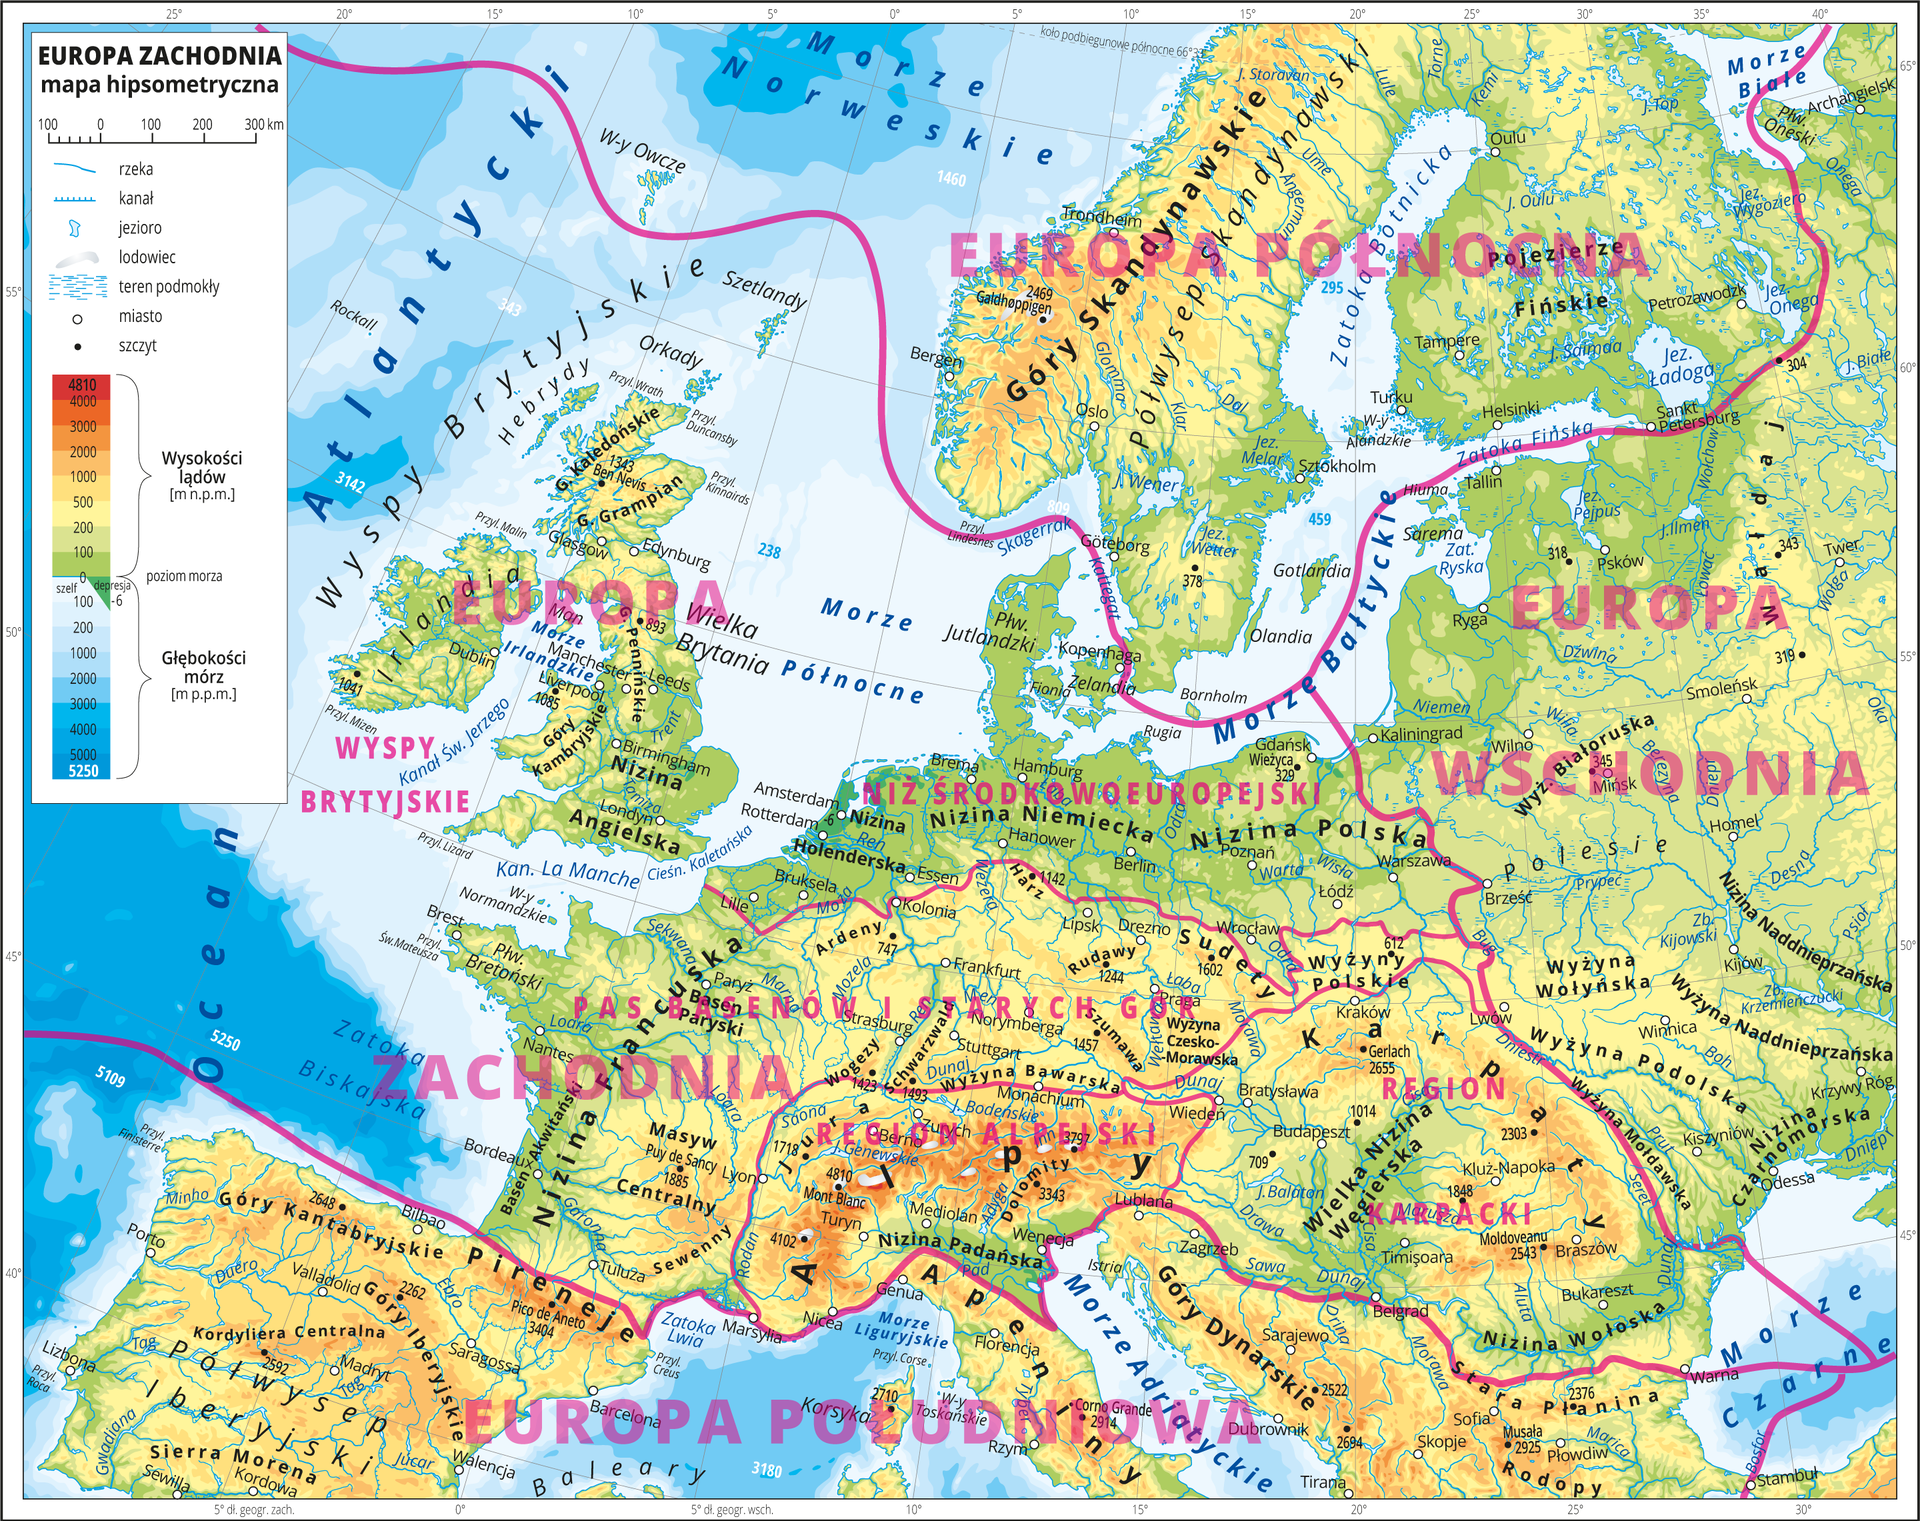 Podział Europy Zachodniej na główne obszary (prowincje)